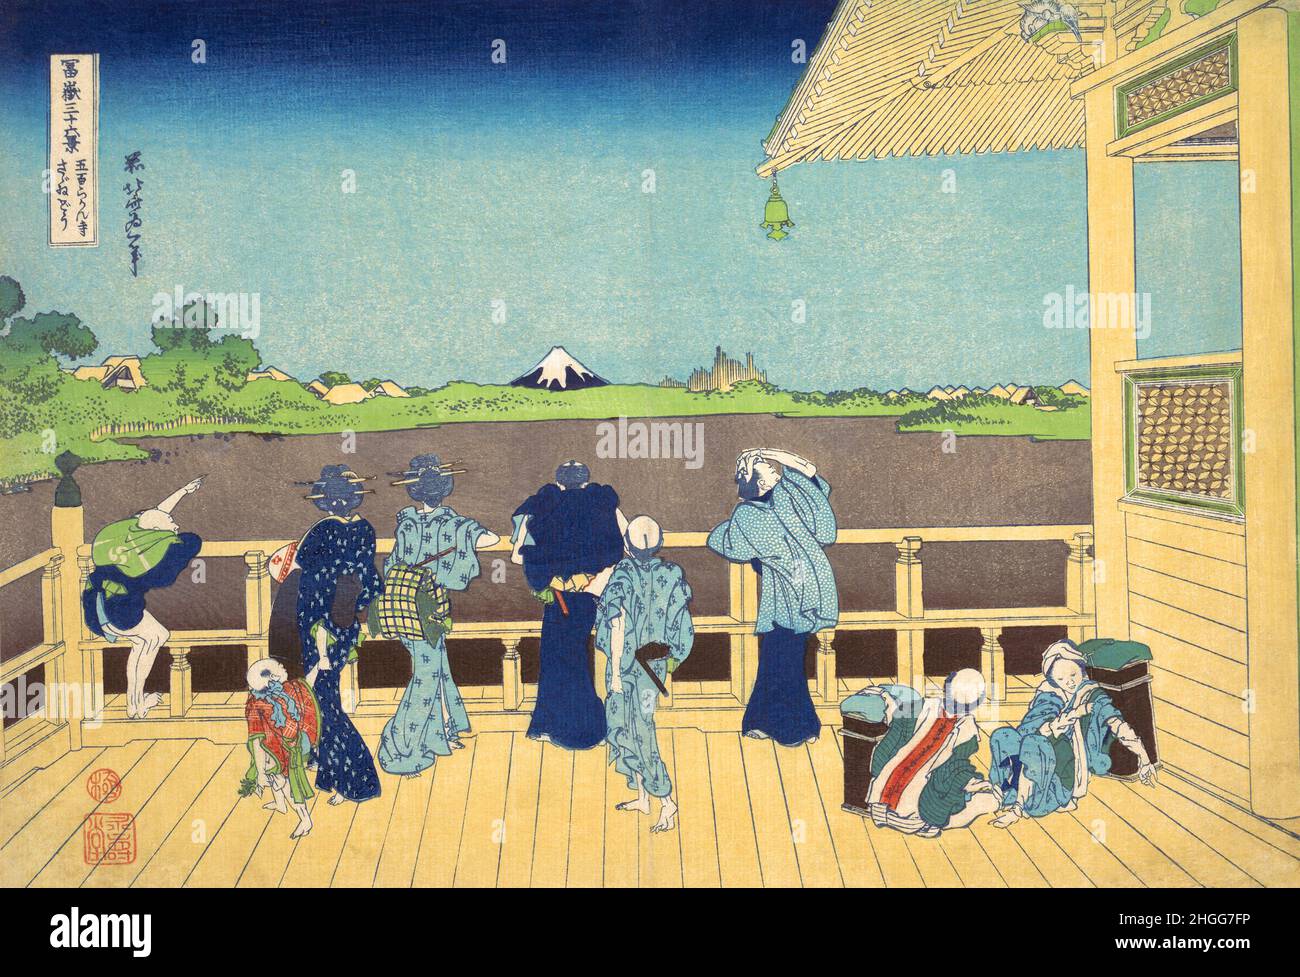 Japon: ‘salle azai - Temple de cinq cents Rakan’.Imprimé Ukiyo-e en blocs de bois de la série «trente-six vues du Mont Fuji» de Katsushika Hokusai (31 octobre 1760 - 10 mai 1849), 1830.«trente-six vues du Mont Fuji» est une série «ukiyo-e» de gravures sur bois de l’artiste japonais Katsushika Hokusai.La série représente le Mont Fuji dans différentes saisons et conditions météorologiques à partir de divers endroits et distances.Il se compose en fait de 46 tirages créés entre 1826 et 1833.Les 36 premiers ont été inclus dans la publication originale et, en raison de leur popularité, 10 autres ont été ajoutés. Banque D'Images